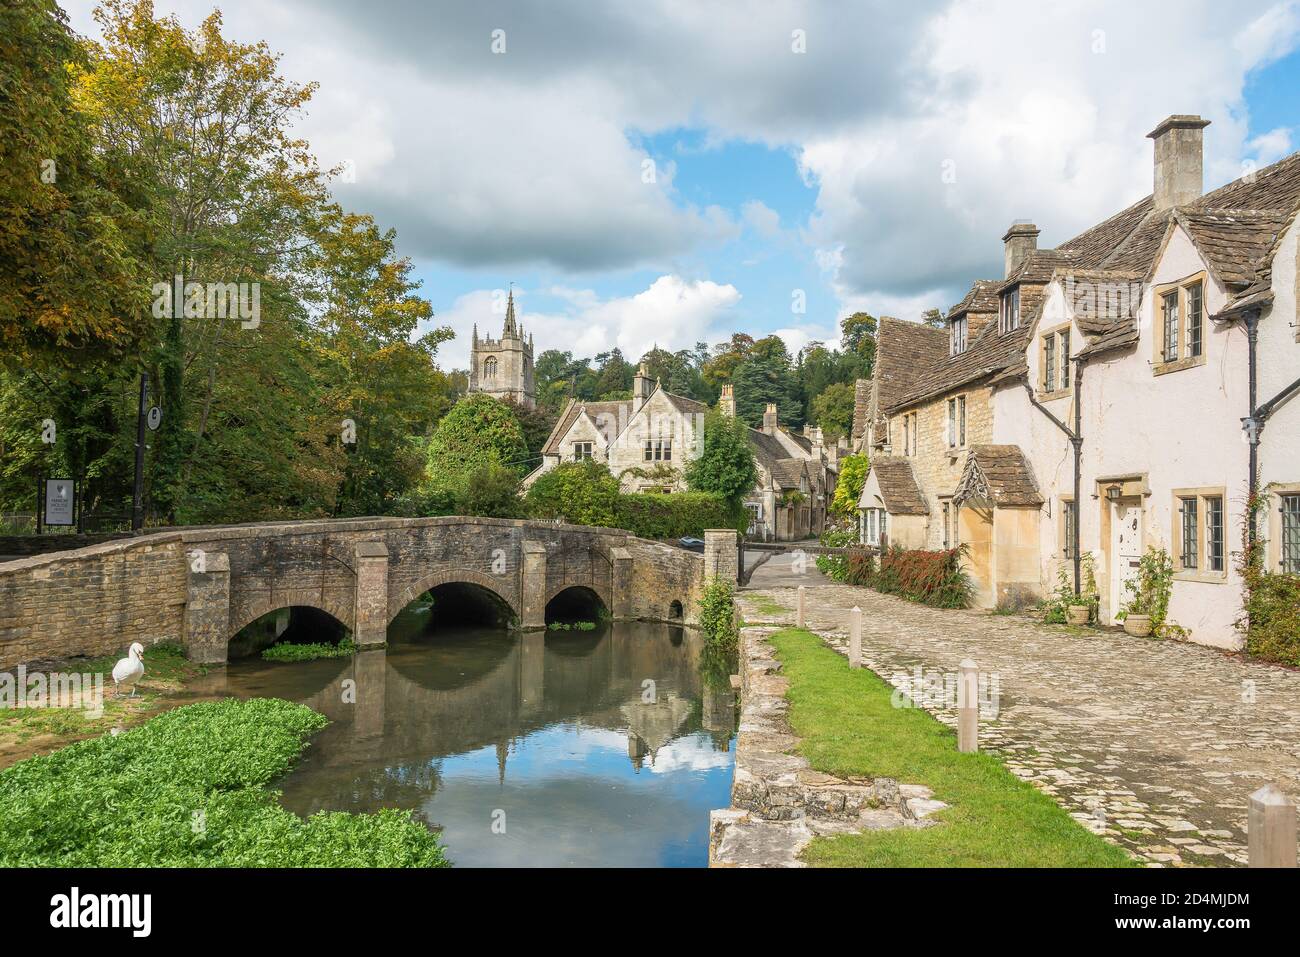 Vue sur le village et la rivière Bybrook, Castle Combe, Wiltshire, Angleterre, Royaume-Uni Banque D'Images